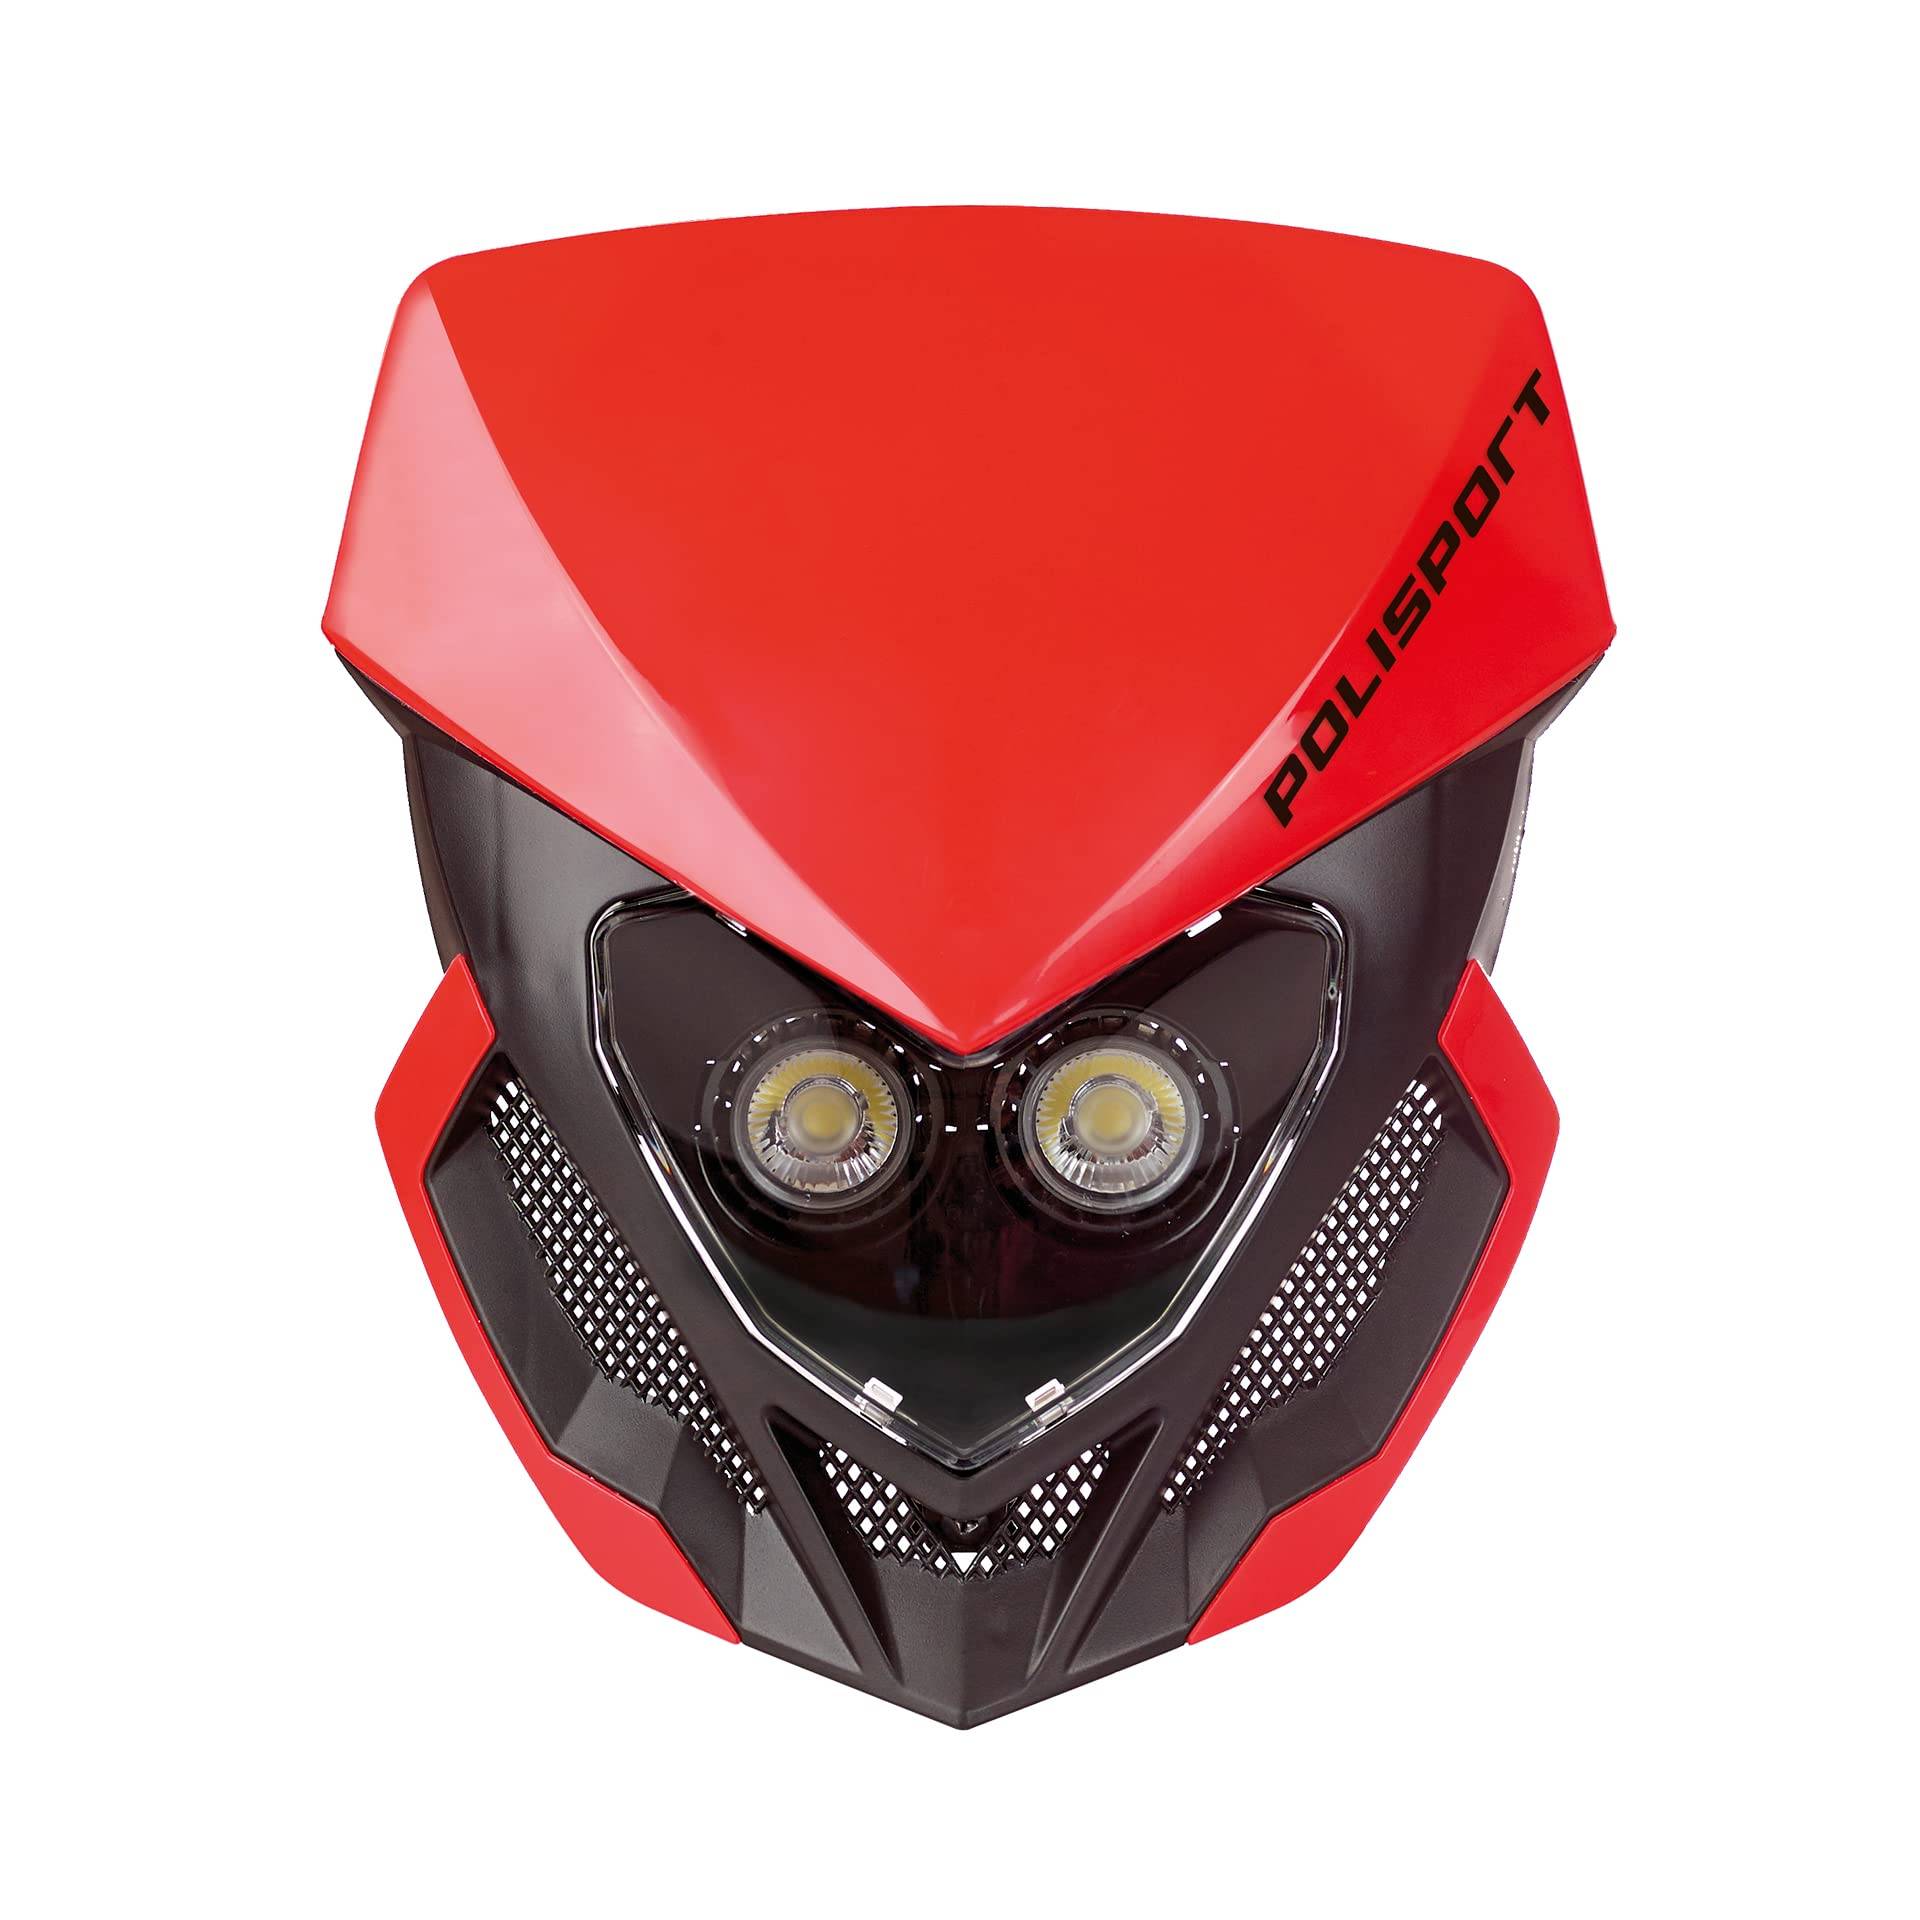 Polisport 8668800005 - Akkubetriebener LOOKOS EVO-Scheinwerfer aus Polypropylen mit LED-Lampe, kompatibel mit allen Motocross-/Enduro-Modellen in Farbe rot/schwarz von Polisport